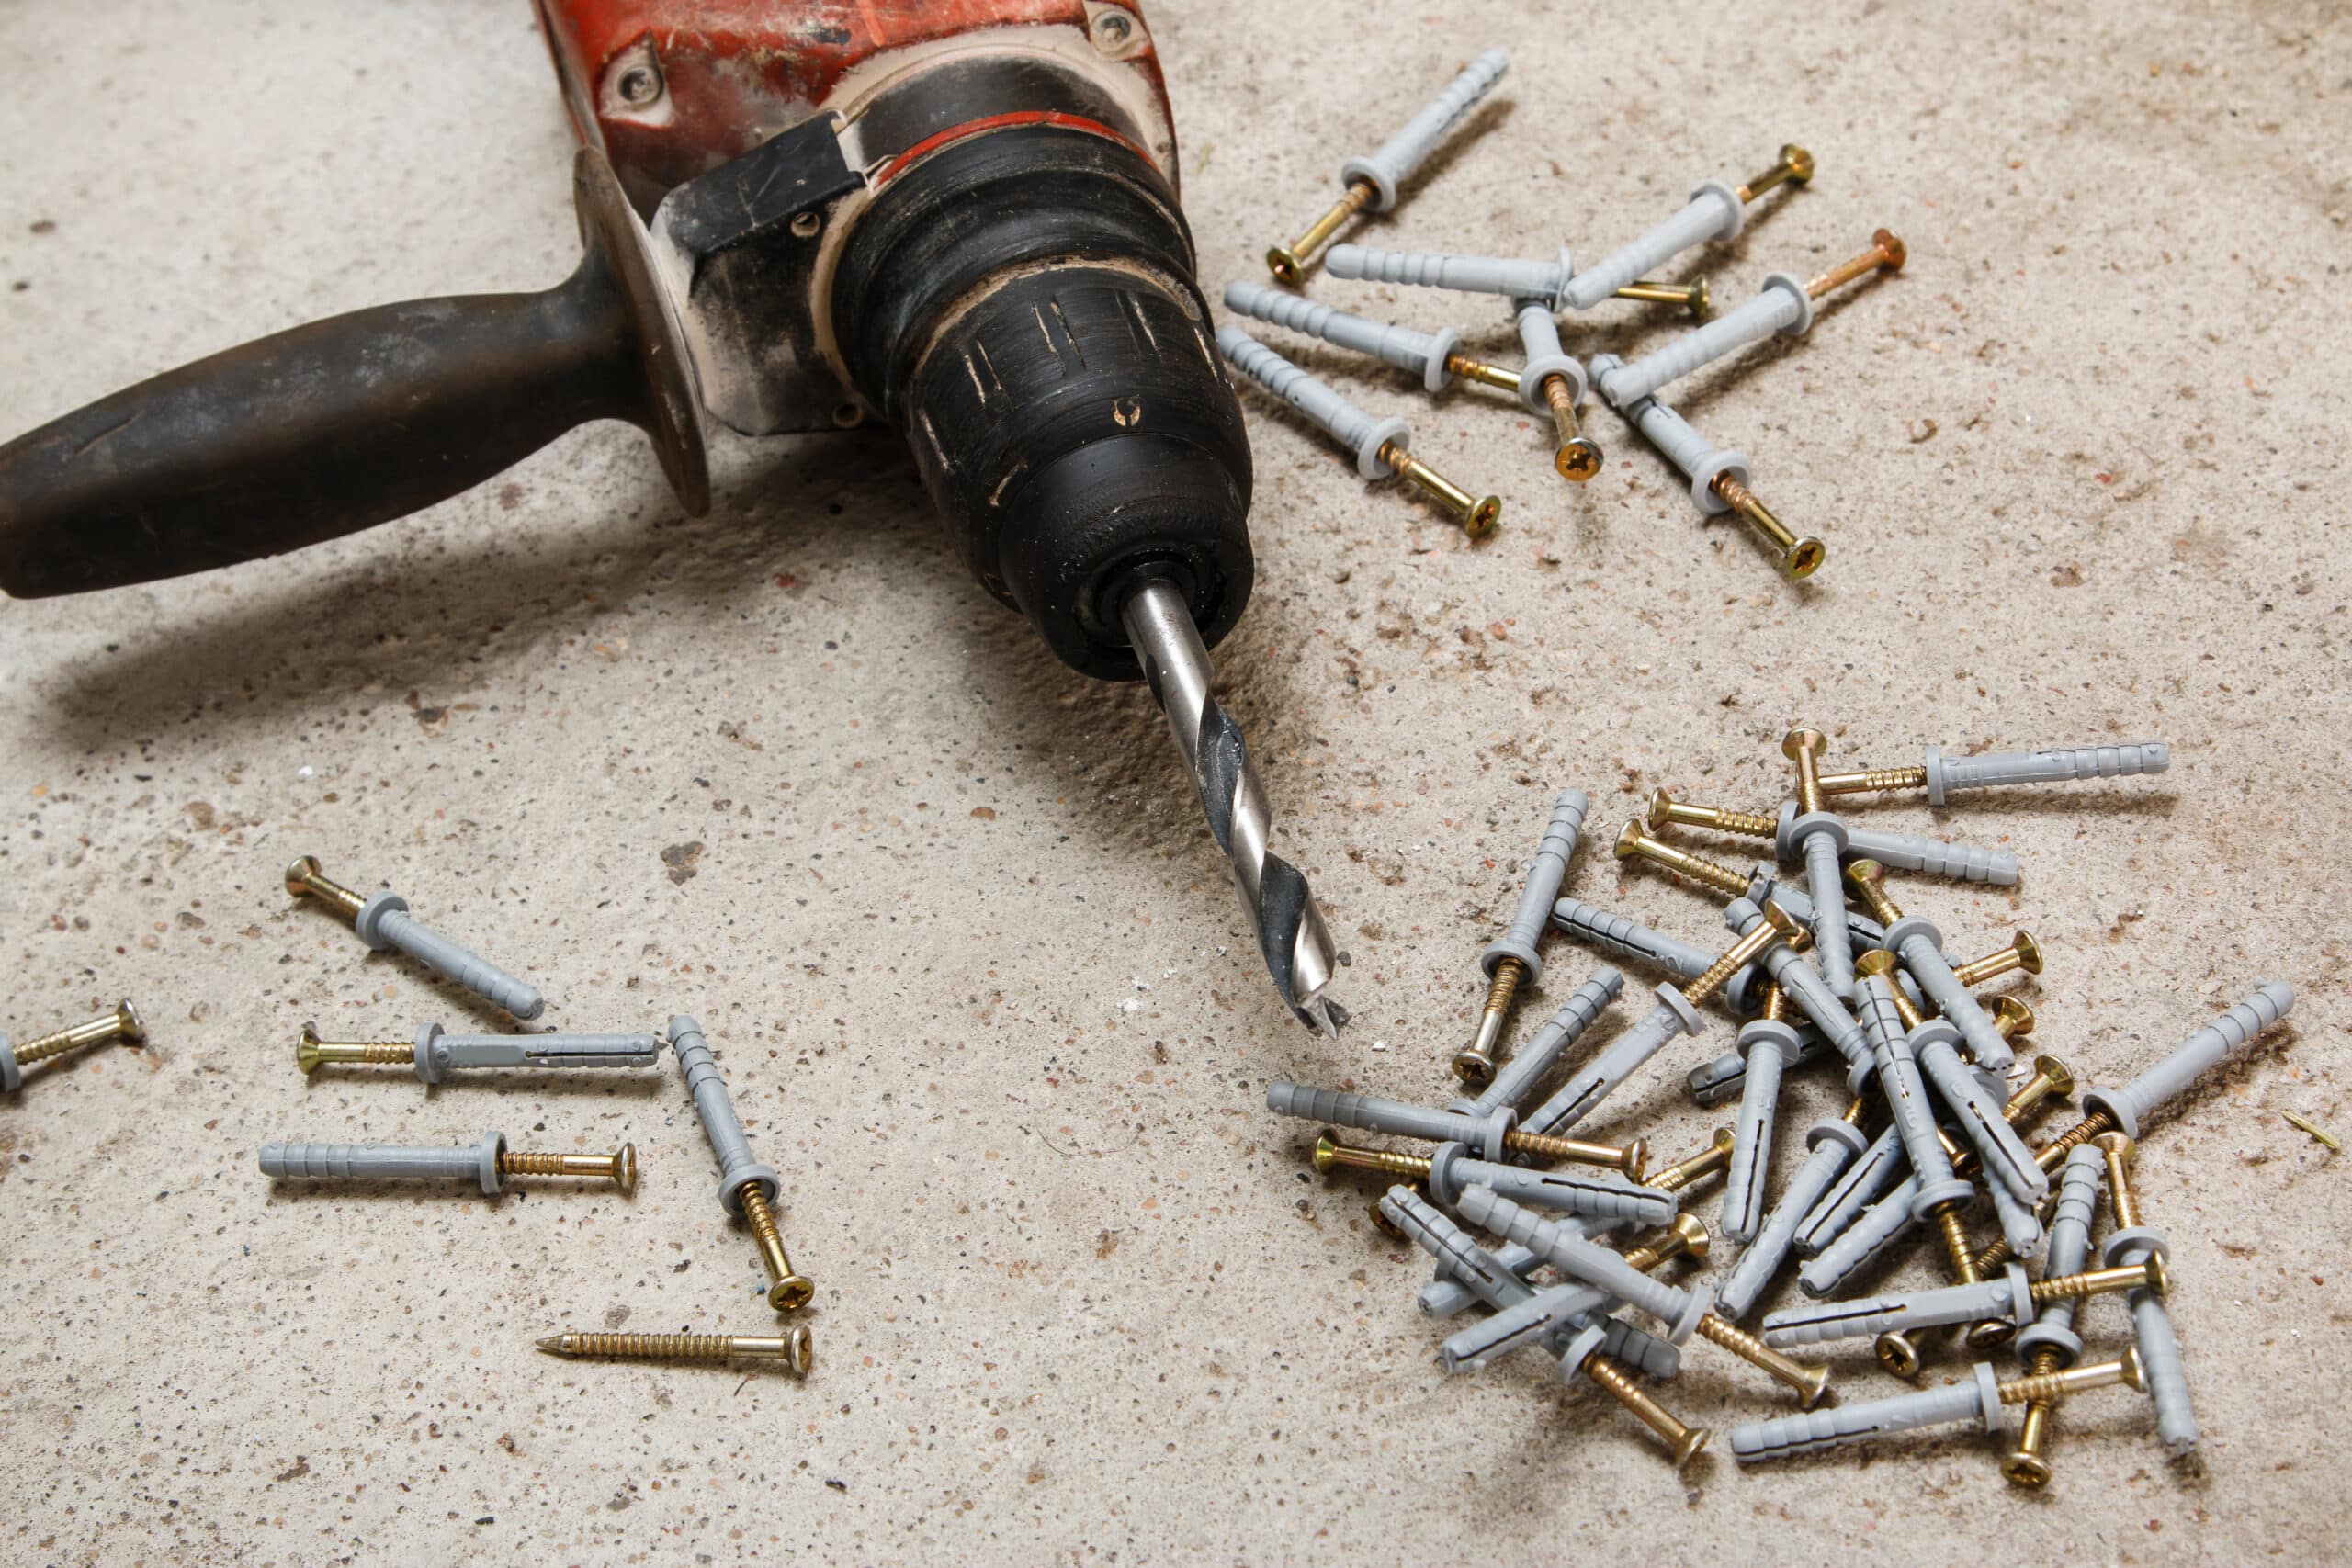 theprecisiontools.com : Can you use a cordless drill for screws?